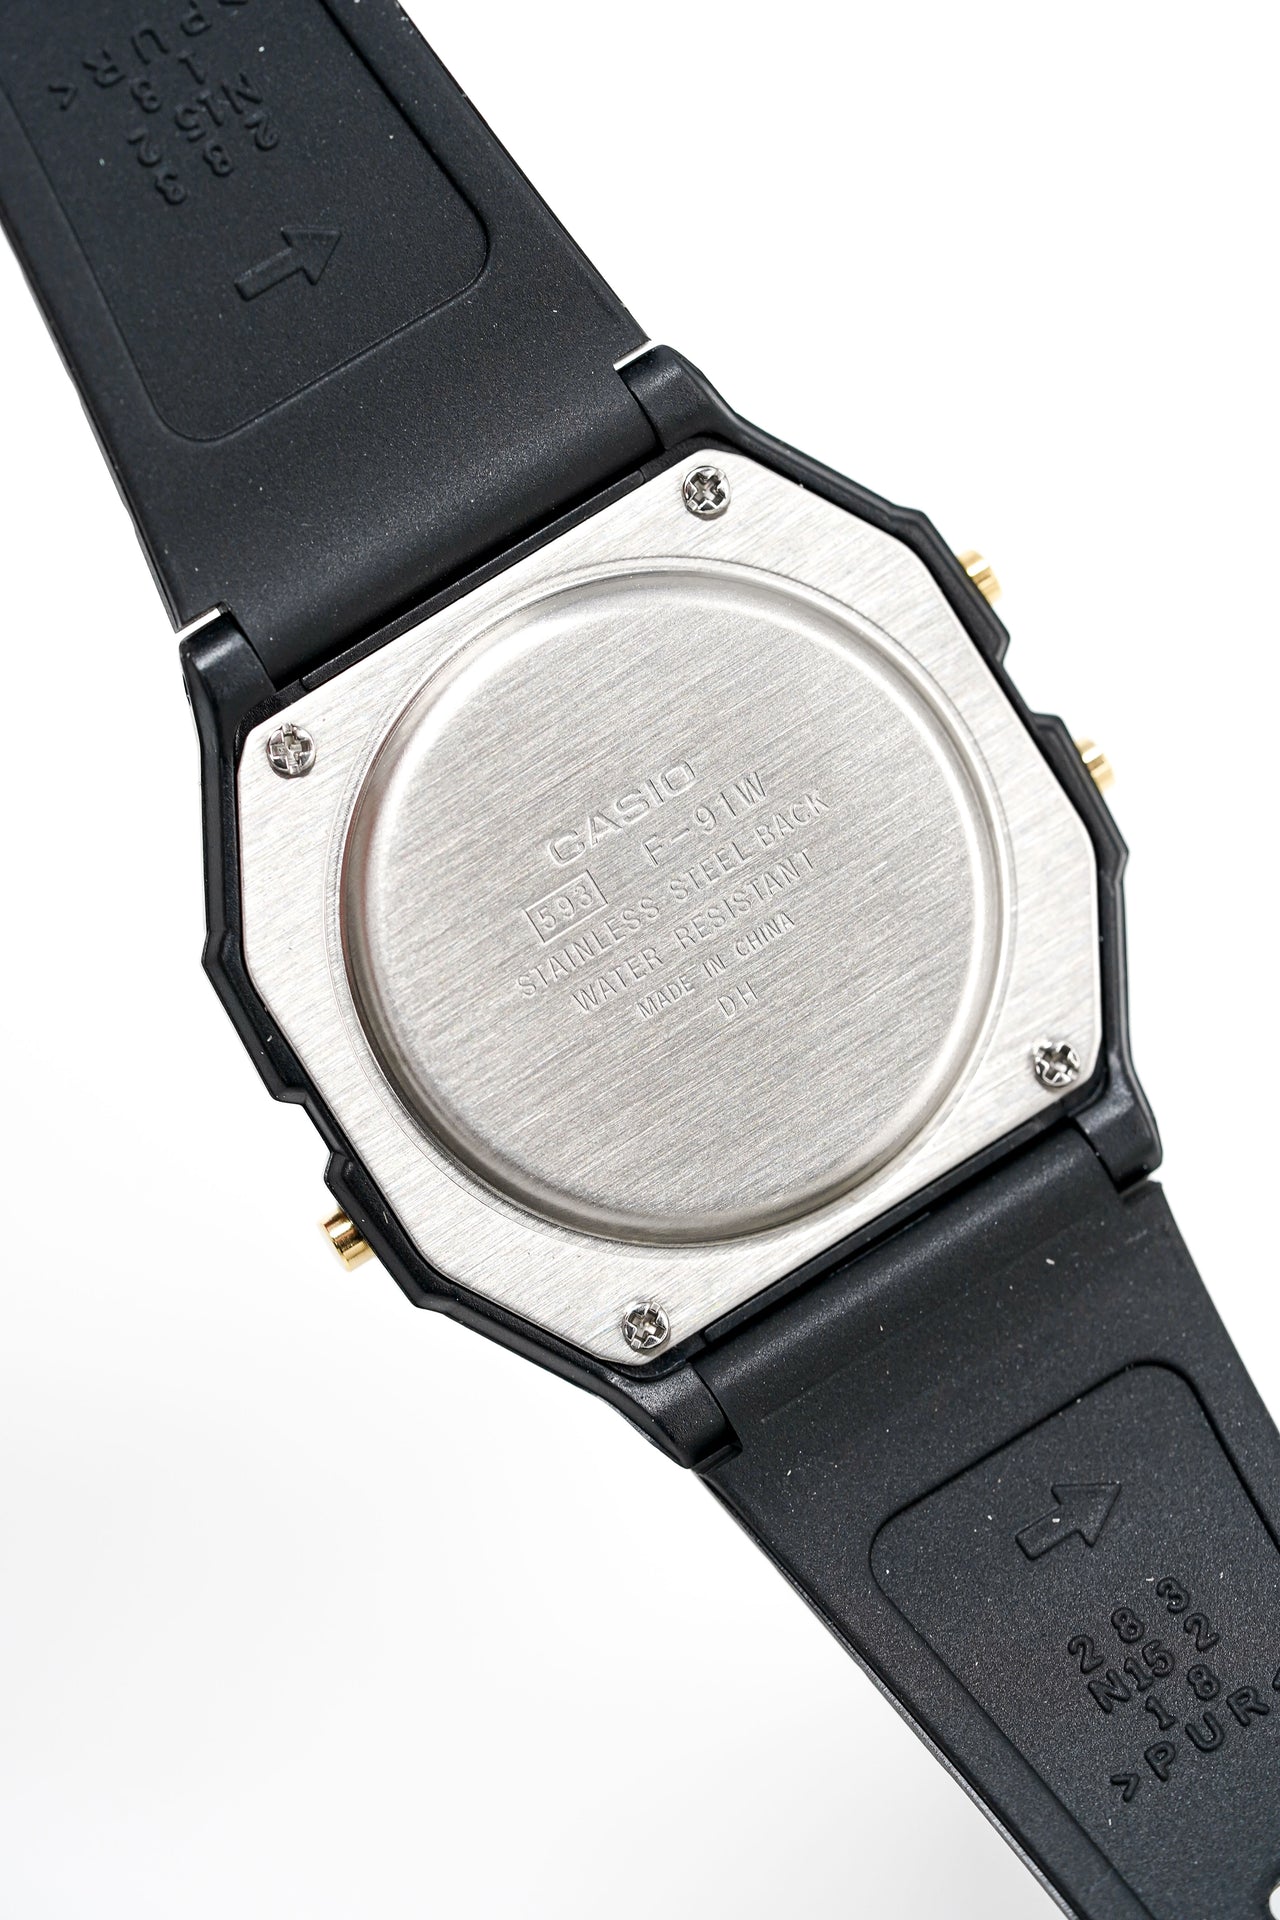 Casio F-91W Classic Digital Chronograph Alarm Watch 593